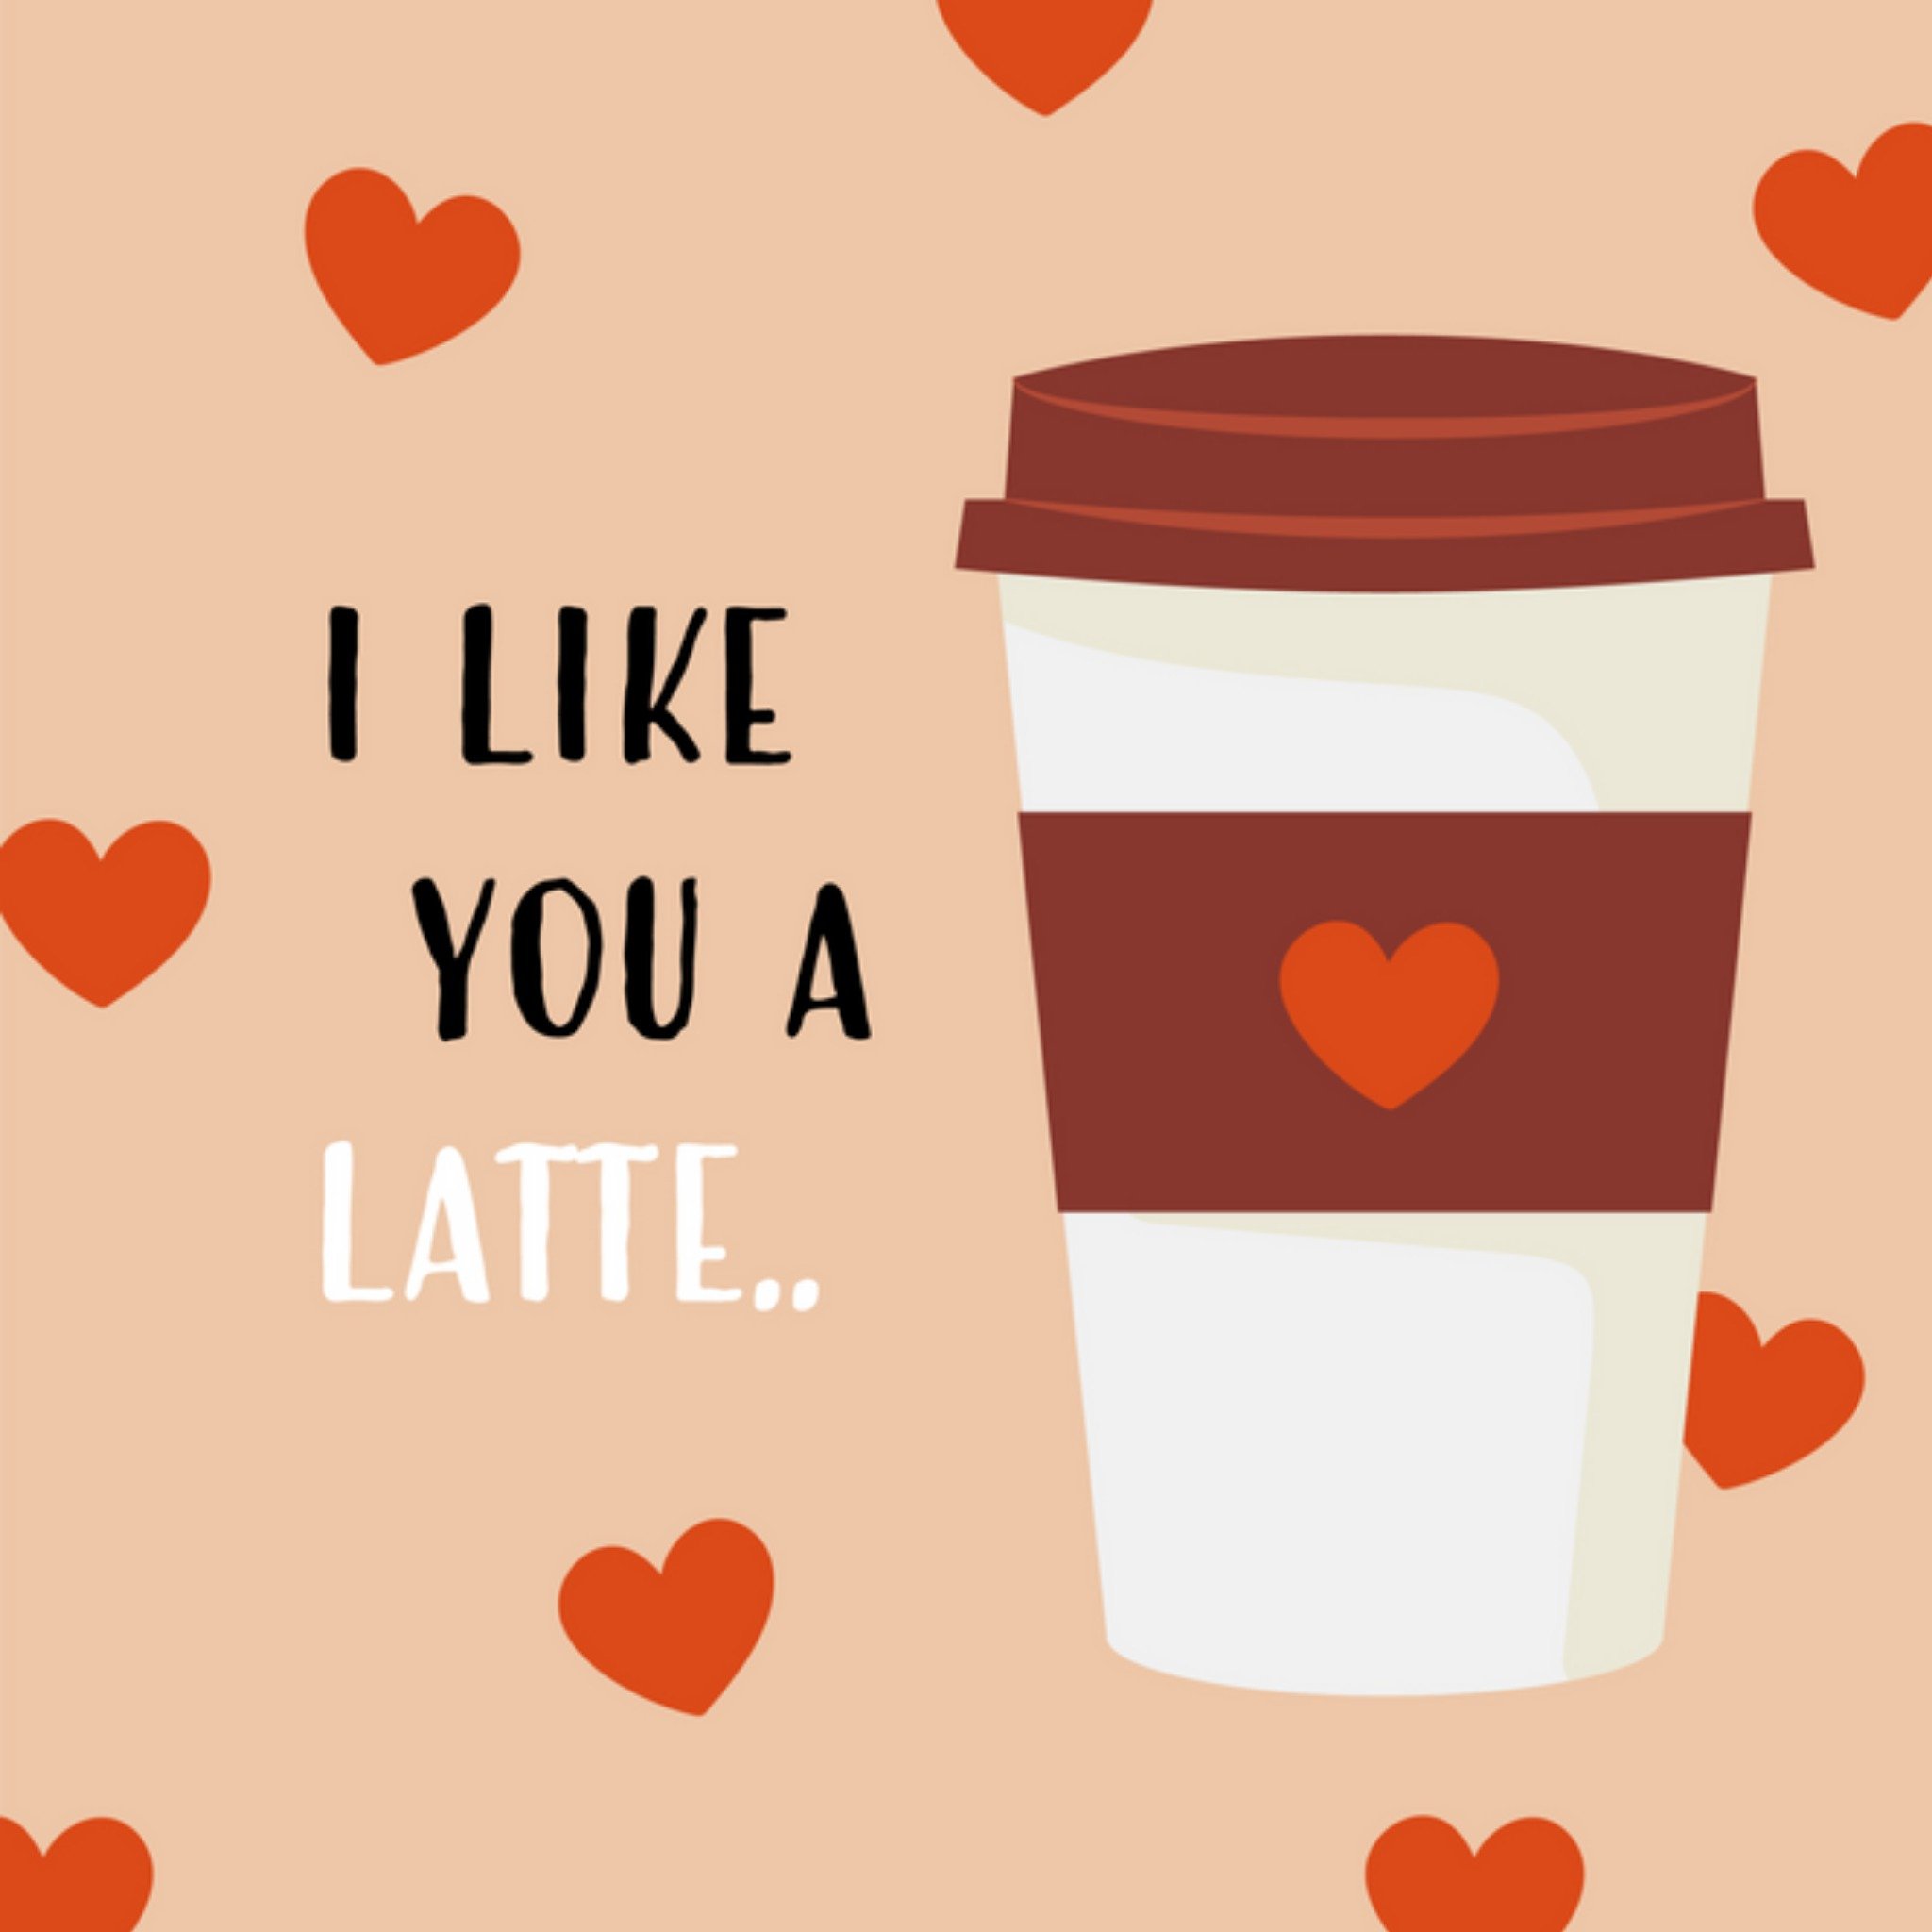 Valentijnskaart - Like you a latte